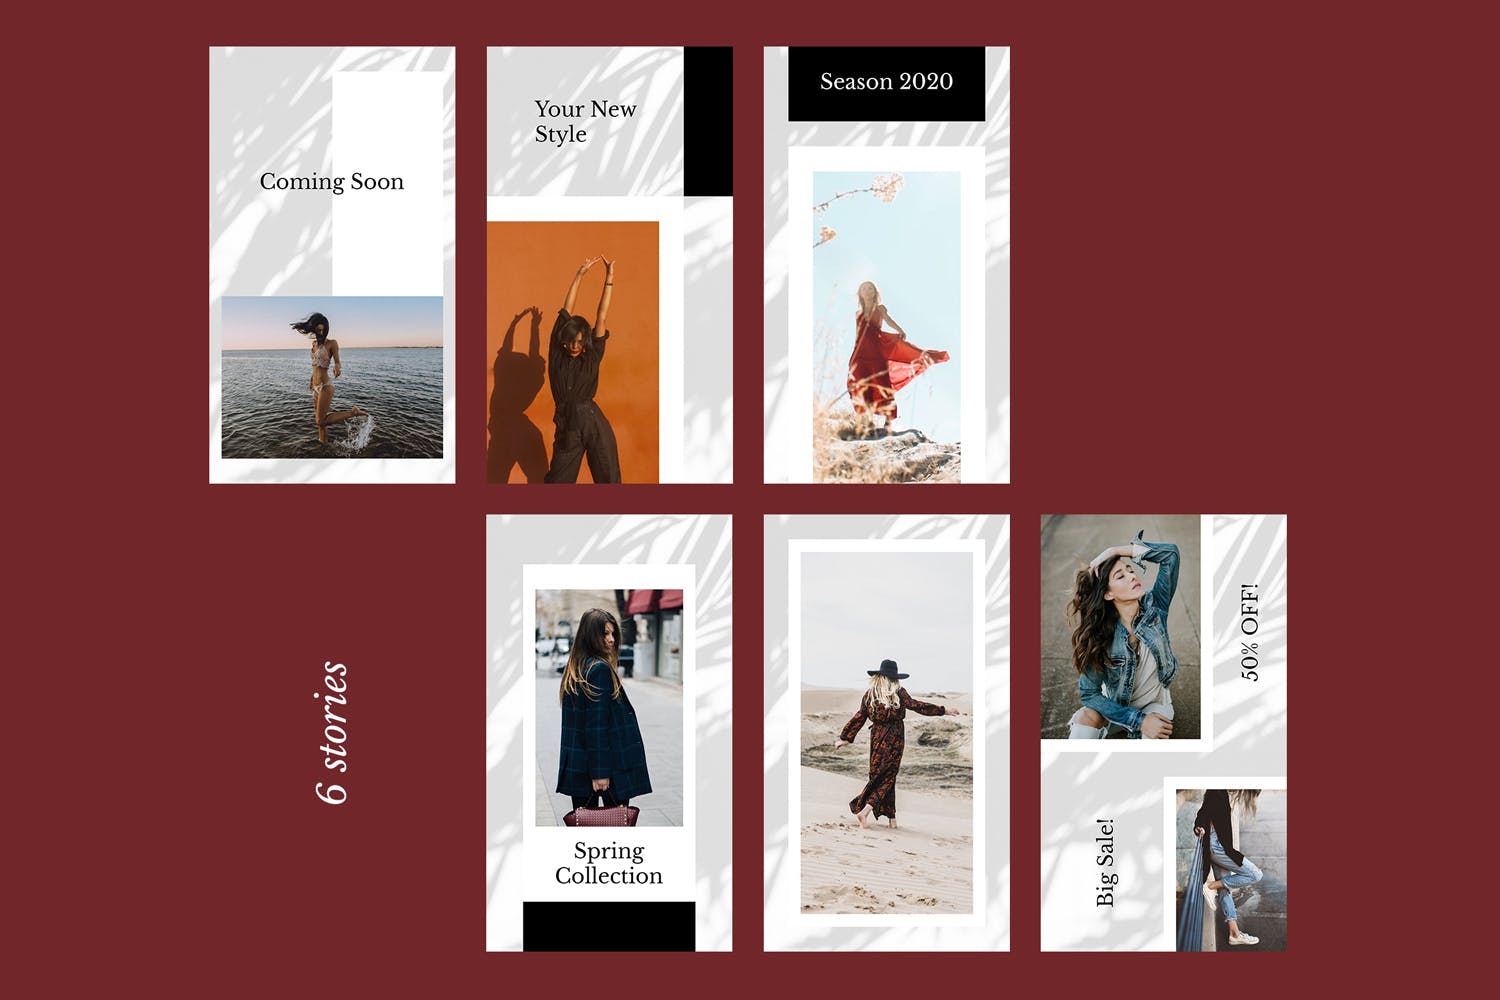 时装品牌产品展示Instagram社交贴图设计模板16图库精选v52 Instagram Stories Kit (Vol.52)插图(1)